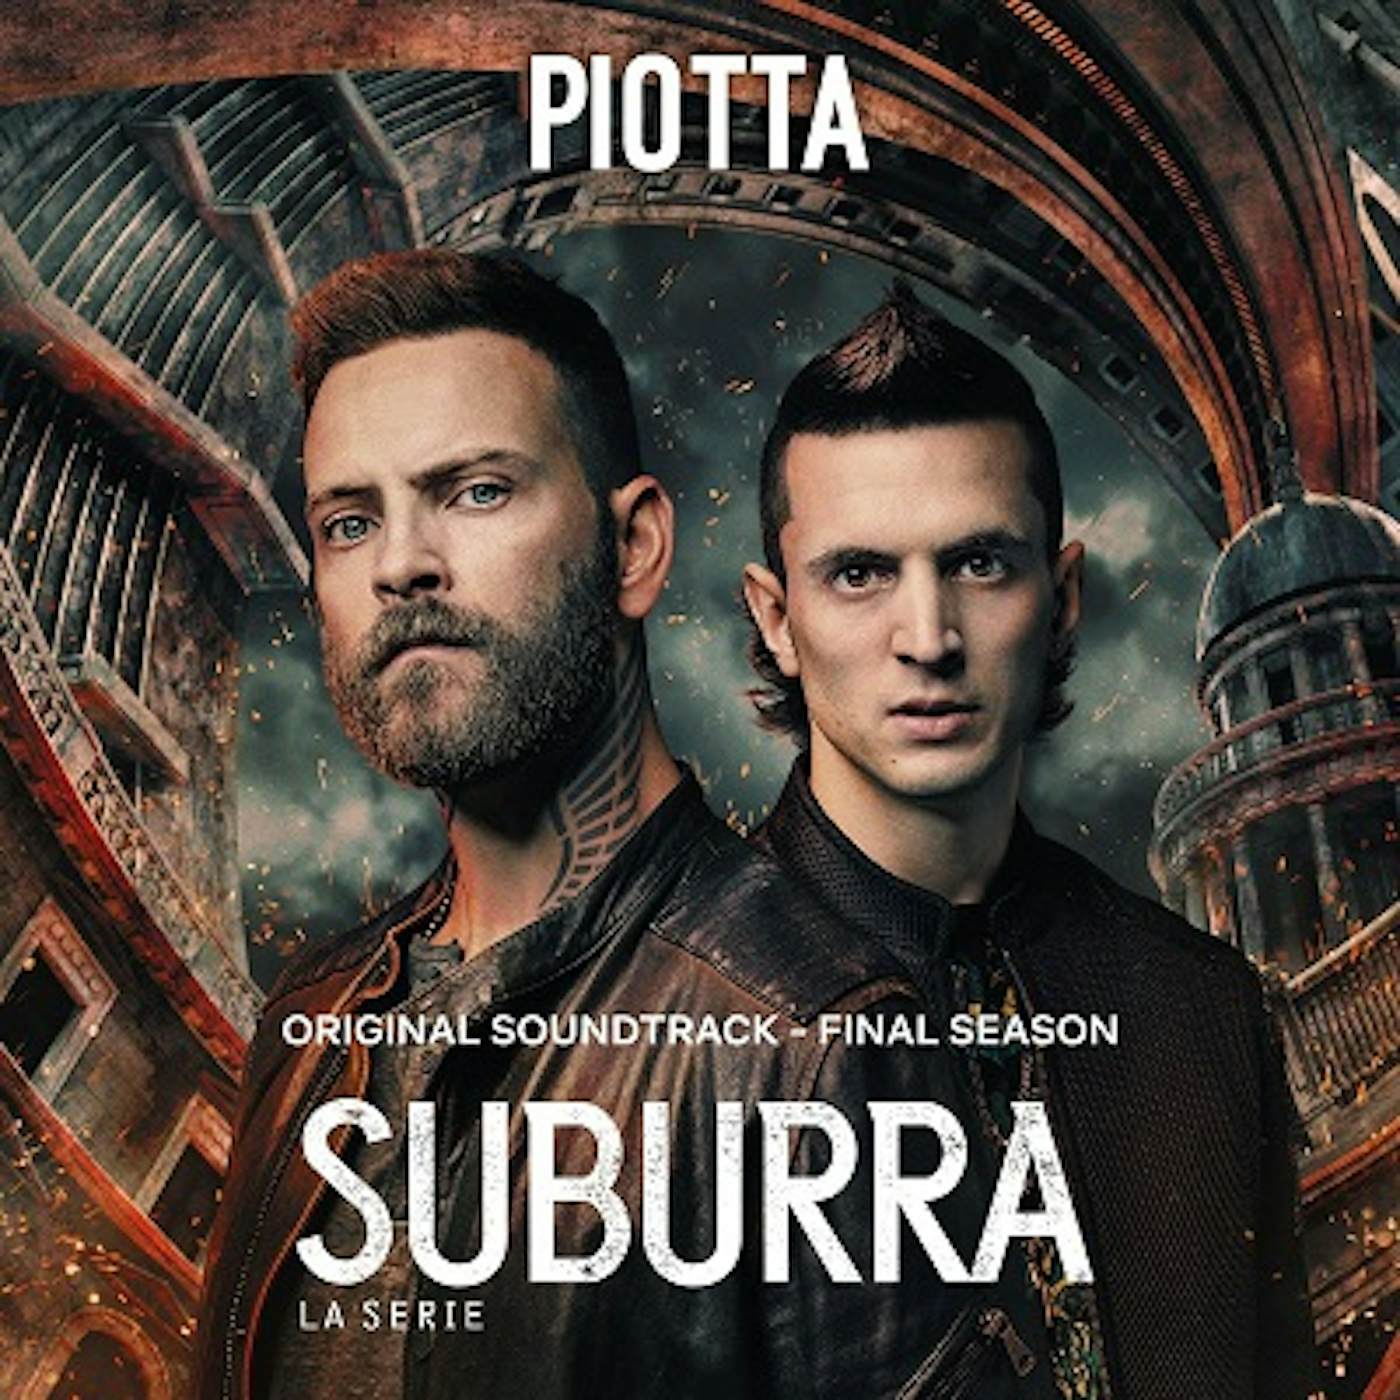 Piotta SUBURRA CD